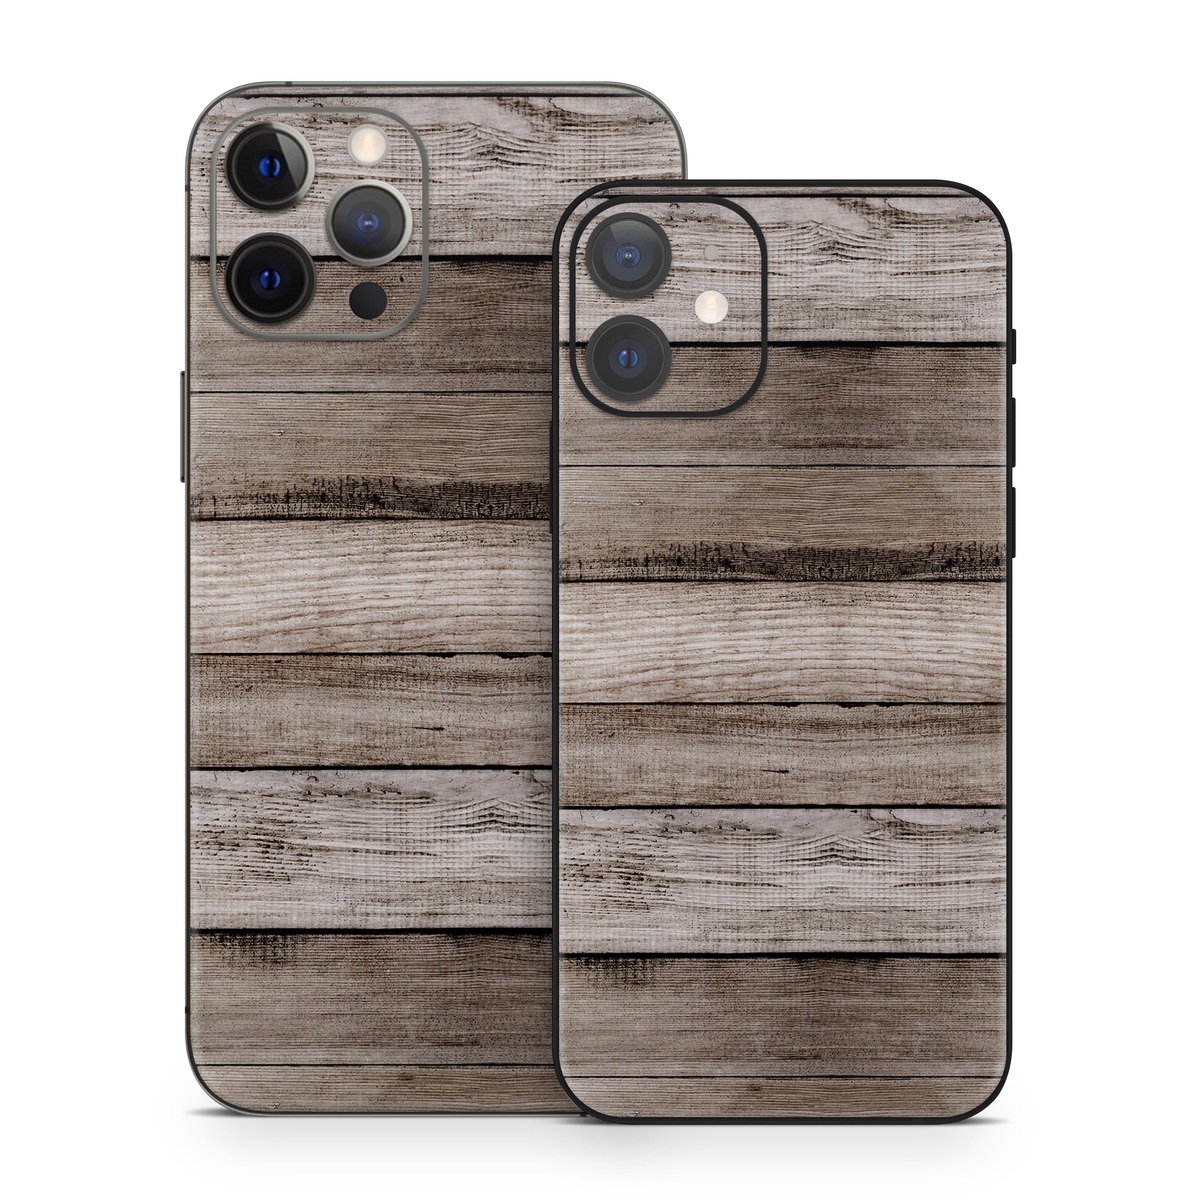 iPhone 12 Series Skin design of Wood, Plank, Wood stain, Hardwood, Line, Pattern, Floor, Lumber, Wood flooring, Plywood, with brown, black colors